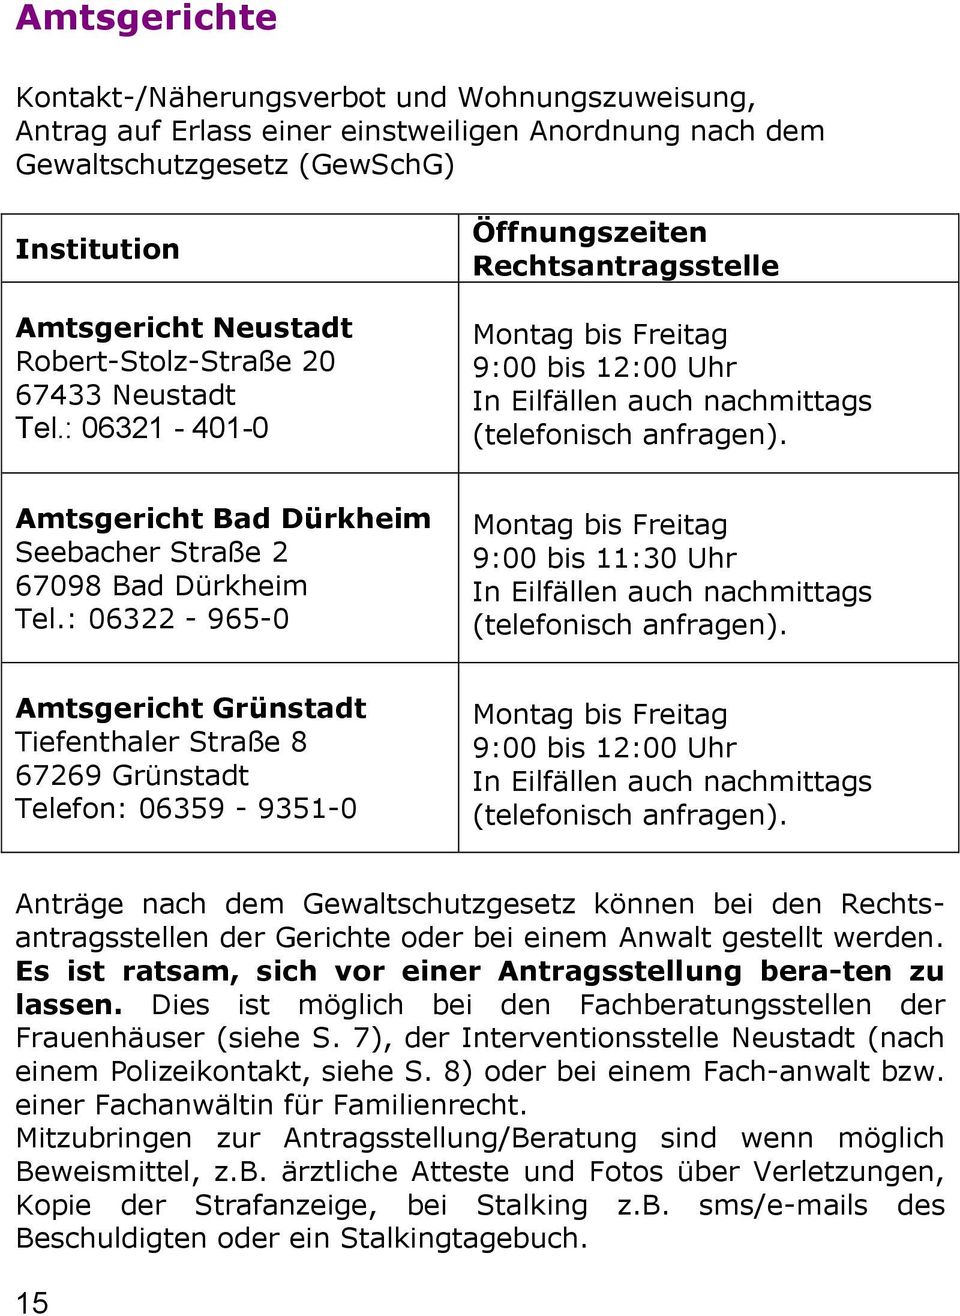 Amtsgericht Bad Dürkheim Seebacher Straße 2 67098 Bad Dürkheim Tel.: 06322-965-0 Montag bis Freitag 9:00 bis 11:30 Uhr In Eilfällen auch nachmittags (telefonisch anfragen).